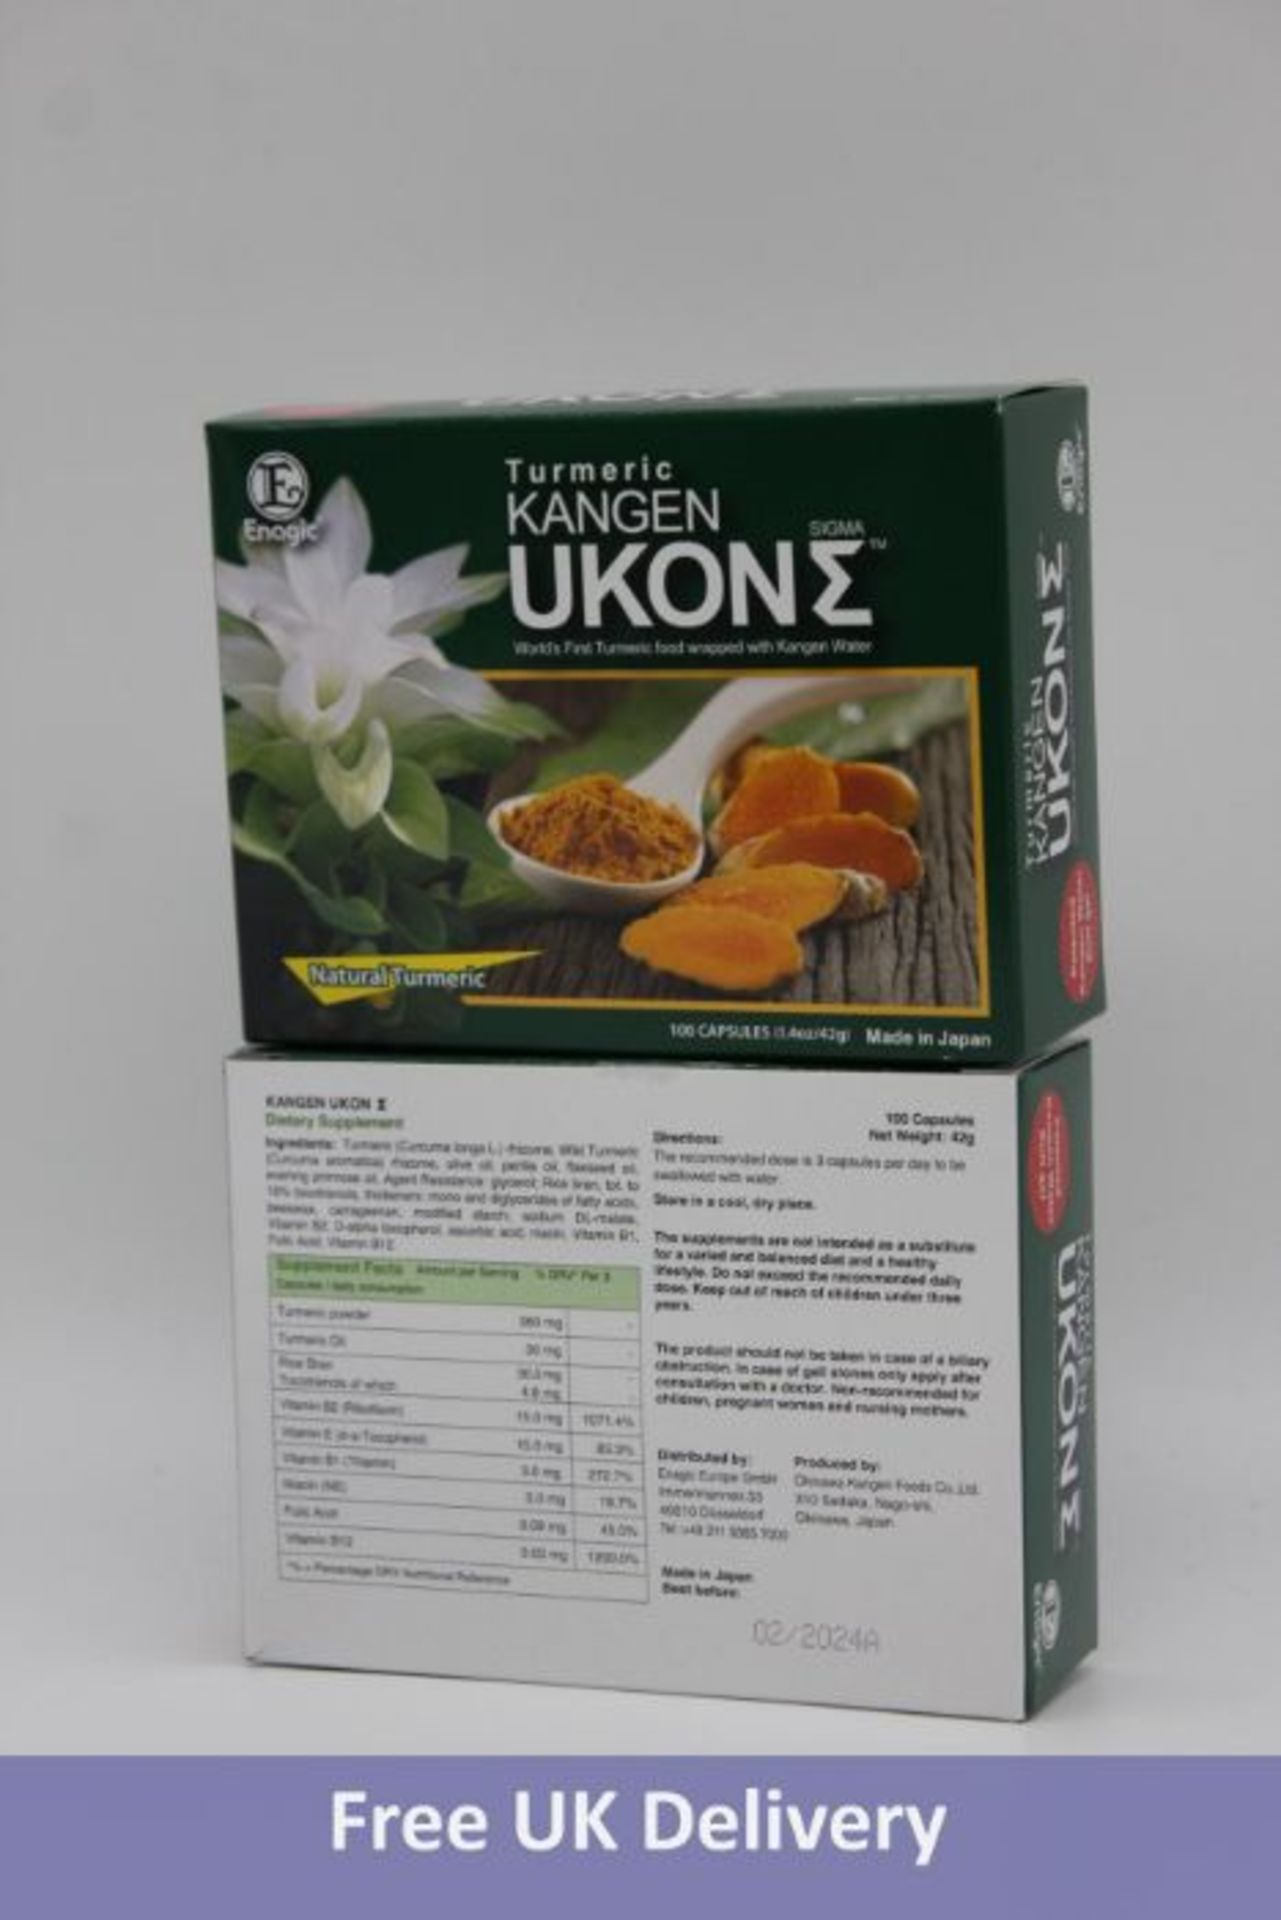 Two Turmeric Enagic Kangen Ukon 100% Natural Turmeric, 100 capsules per package